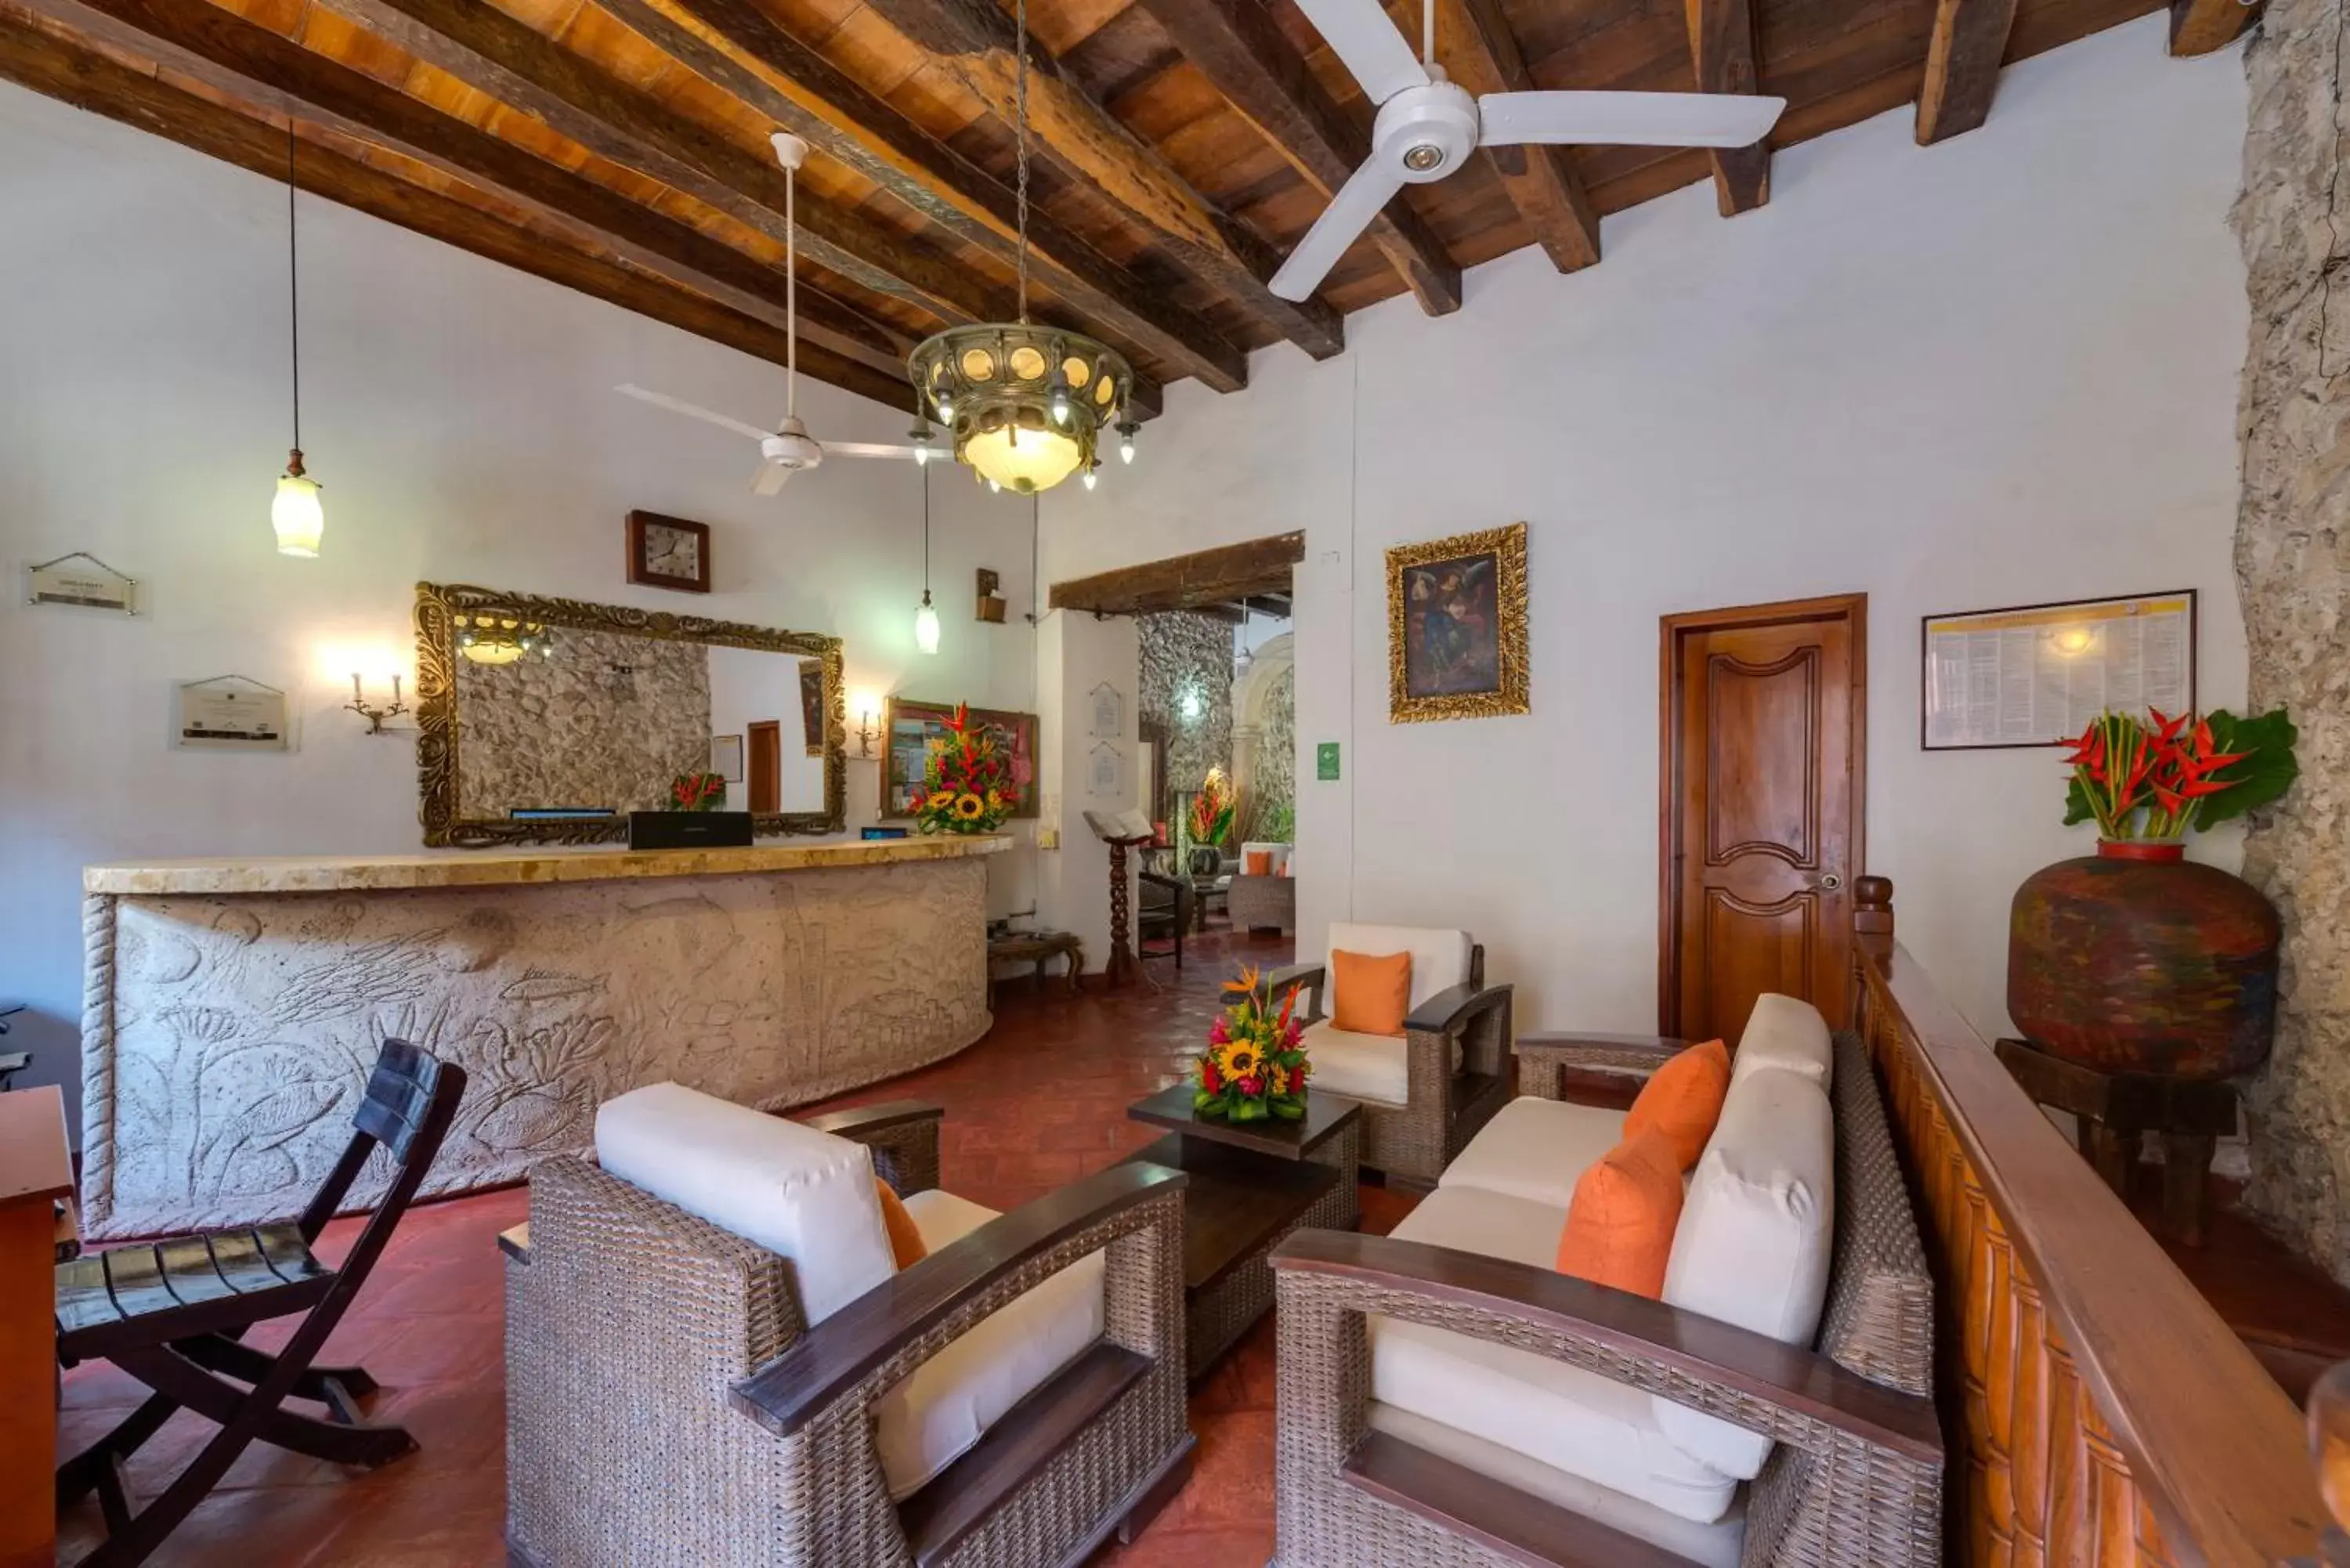 Lobby or reception in Casa Del Curato